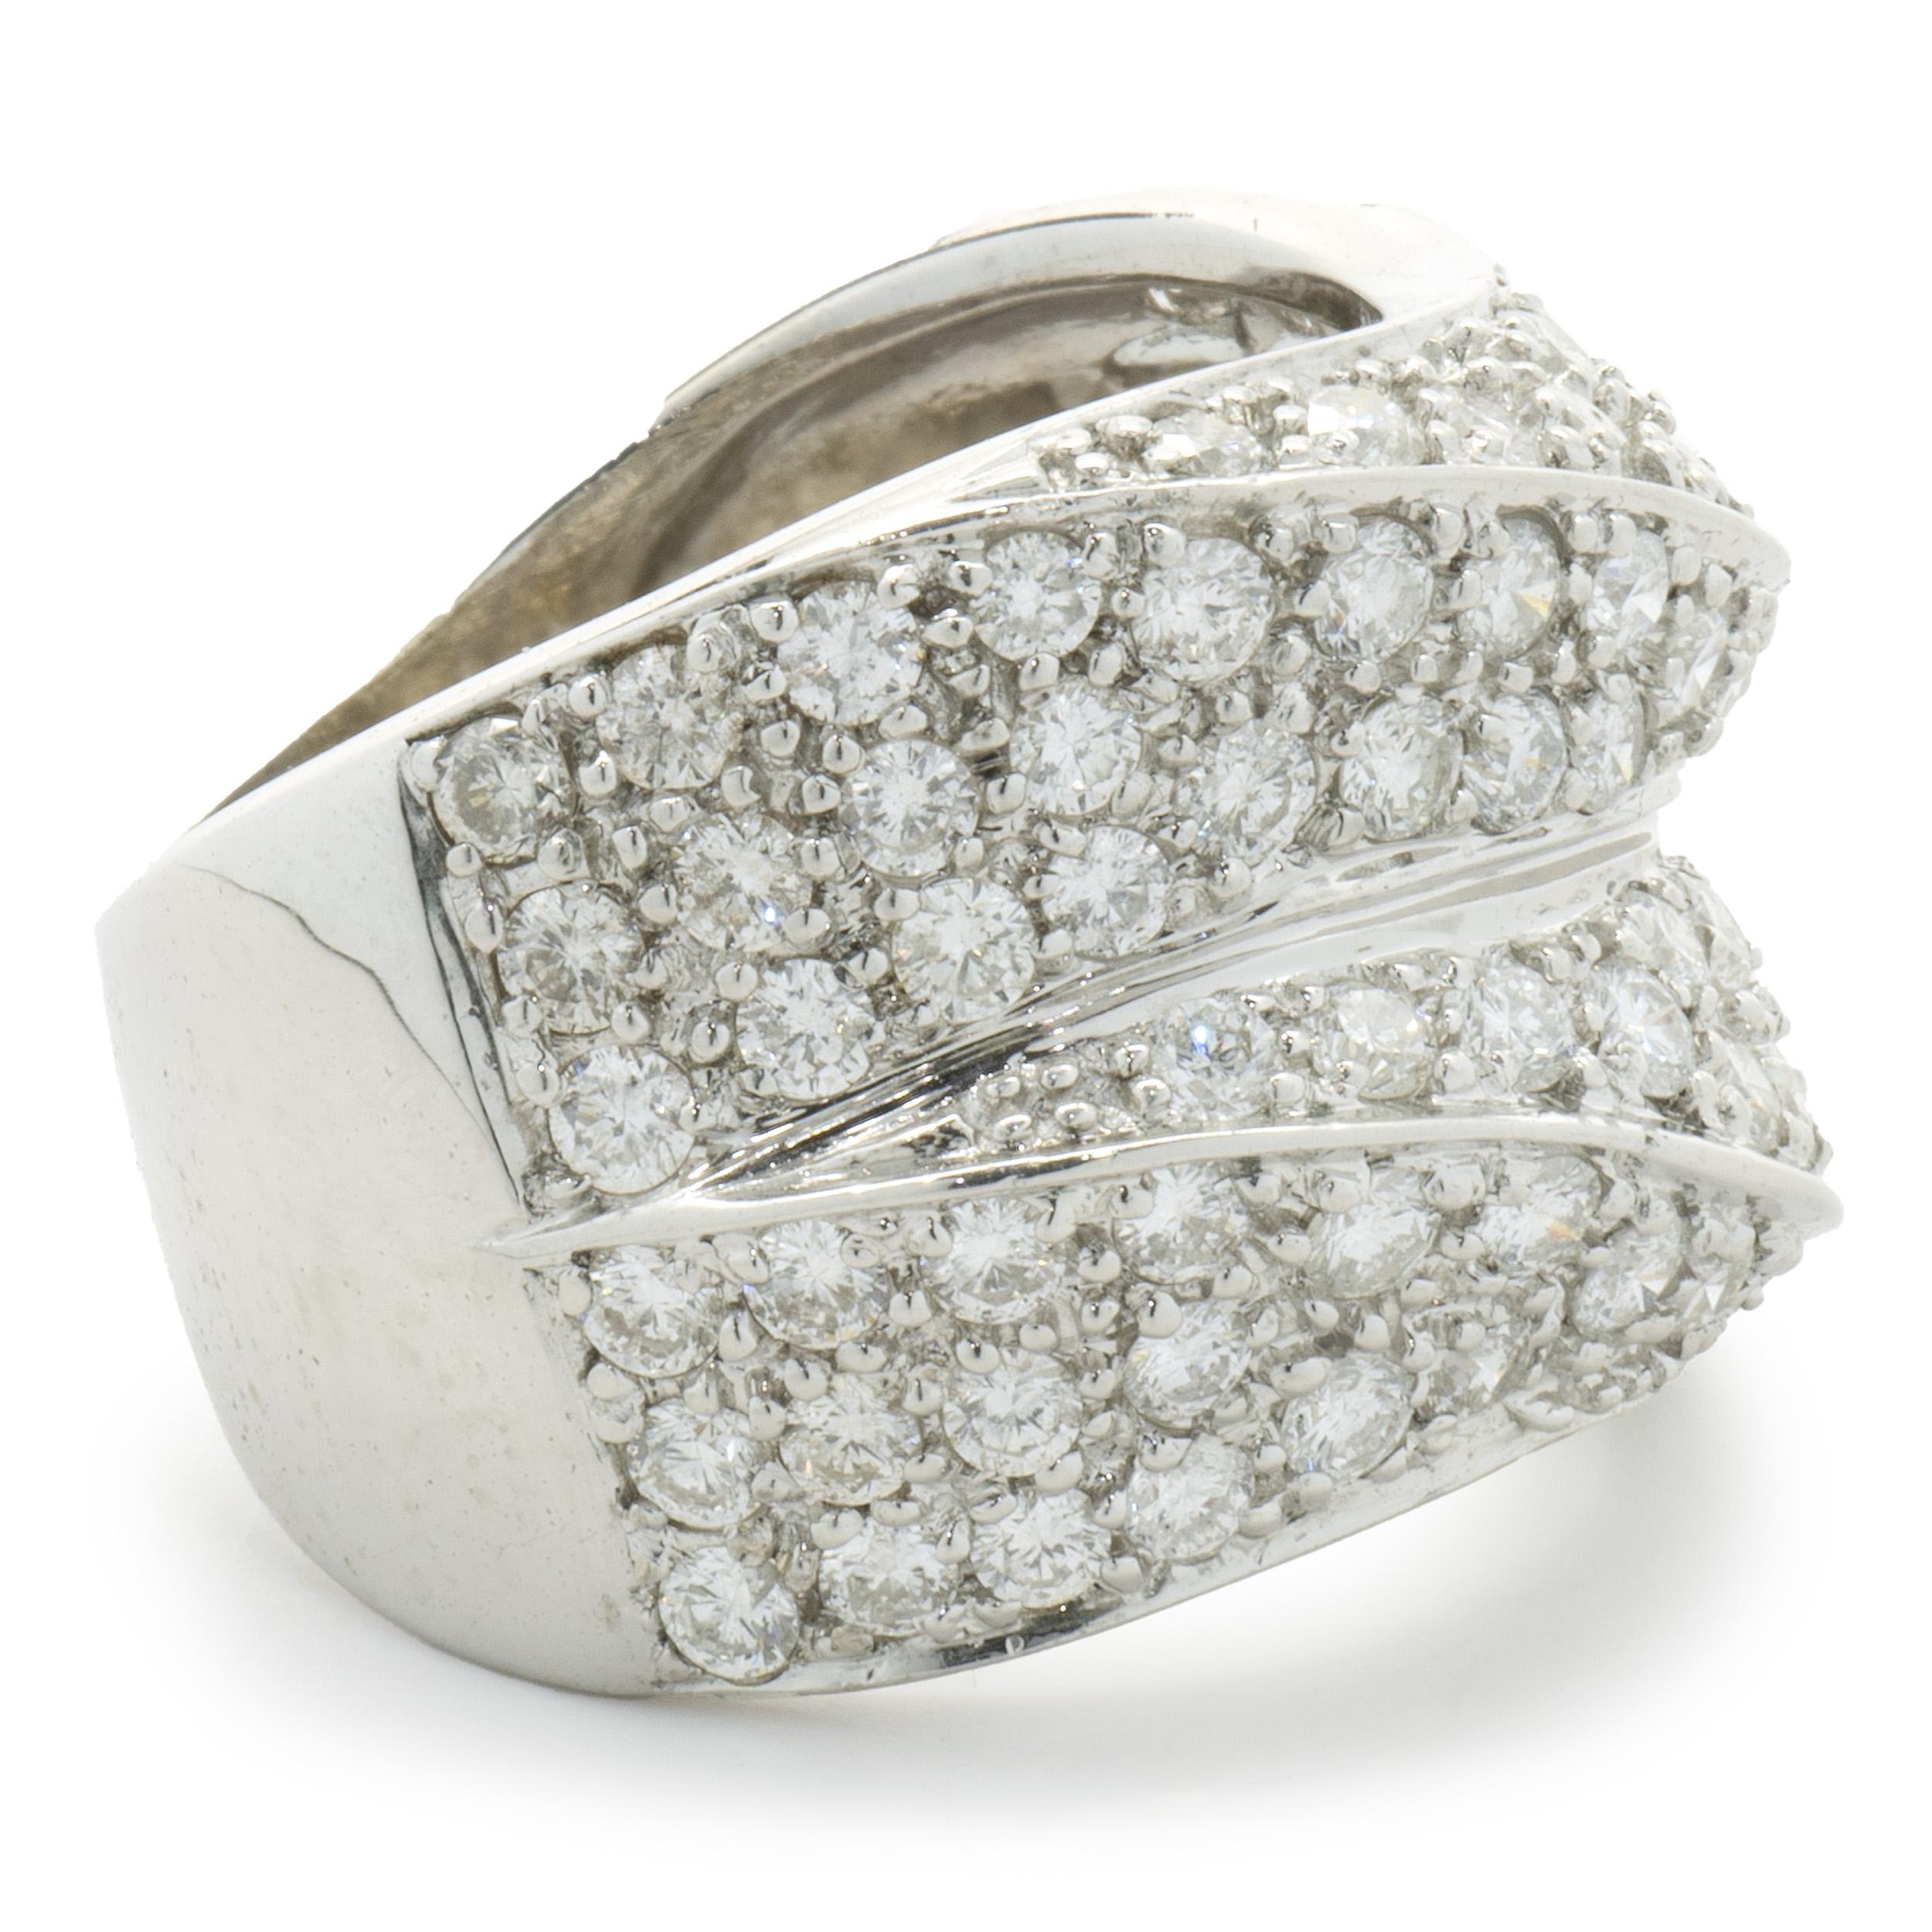 Concepteur : personnalisé
Matériau : Or blanc 18K
Diamant : 88 diamants ronds de taille brillant = 2.20cttw
Couleur : H
Clarté : SI1-2
Taille : 9 tailles disponibles 
Poids : 12,50 grammes